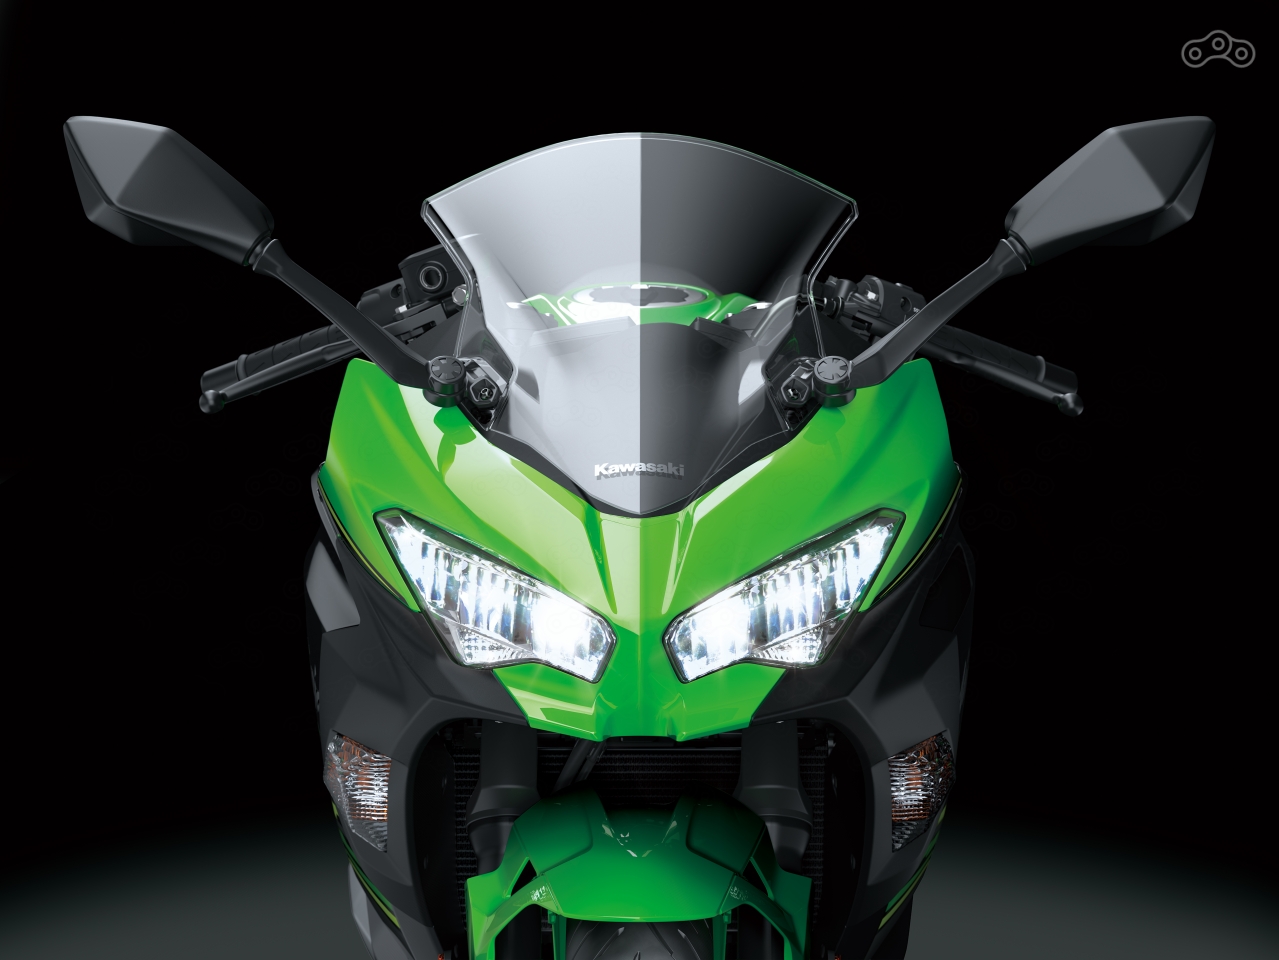 Новый спортивный байк модельной серии 2018 года - Kawasaki Ninja 400